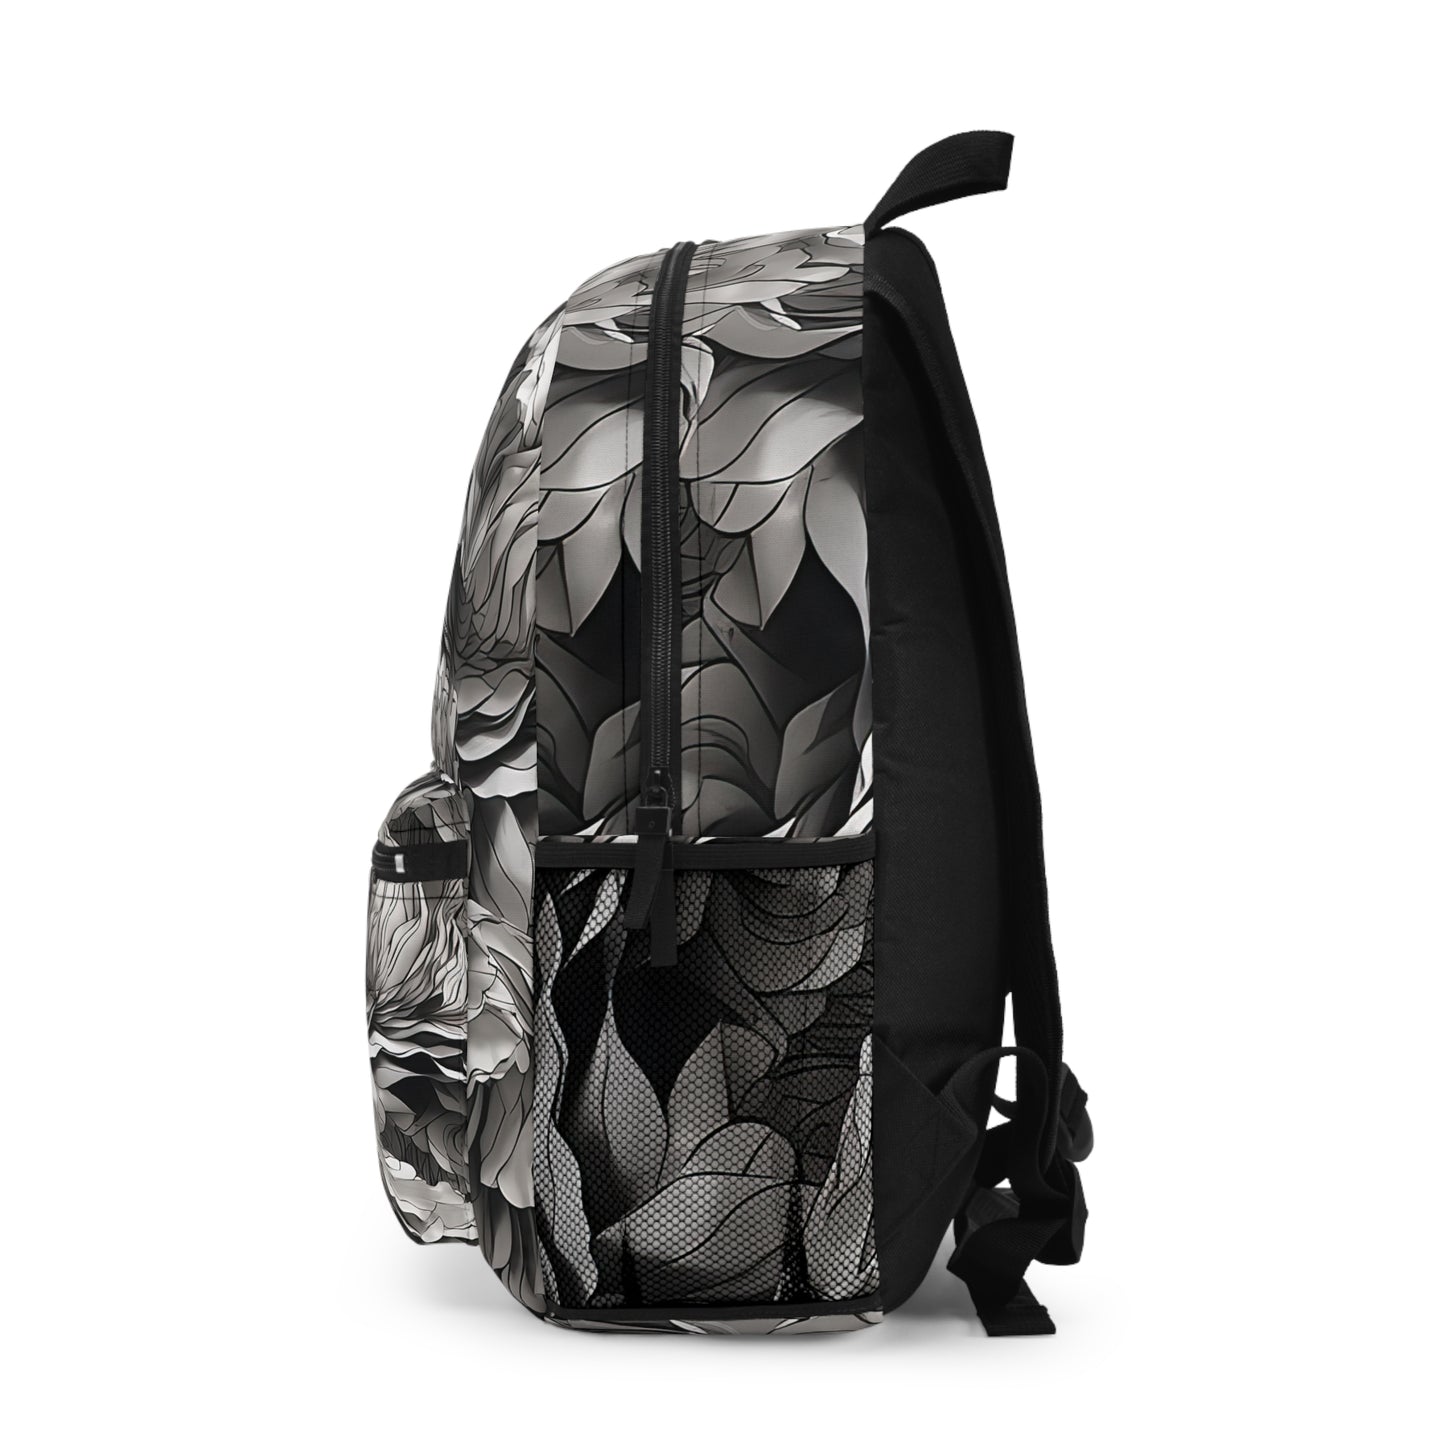 Onyx Ruffles Backpack